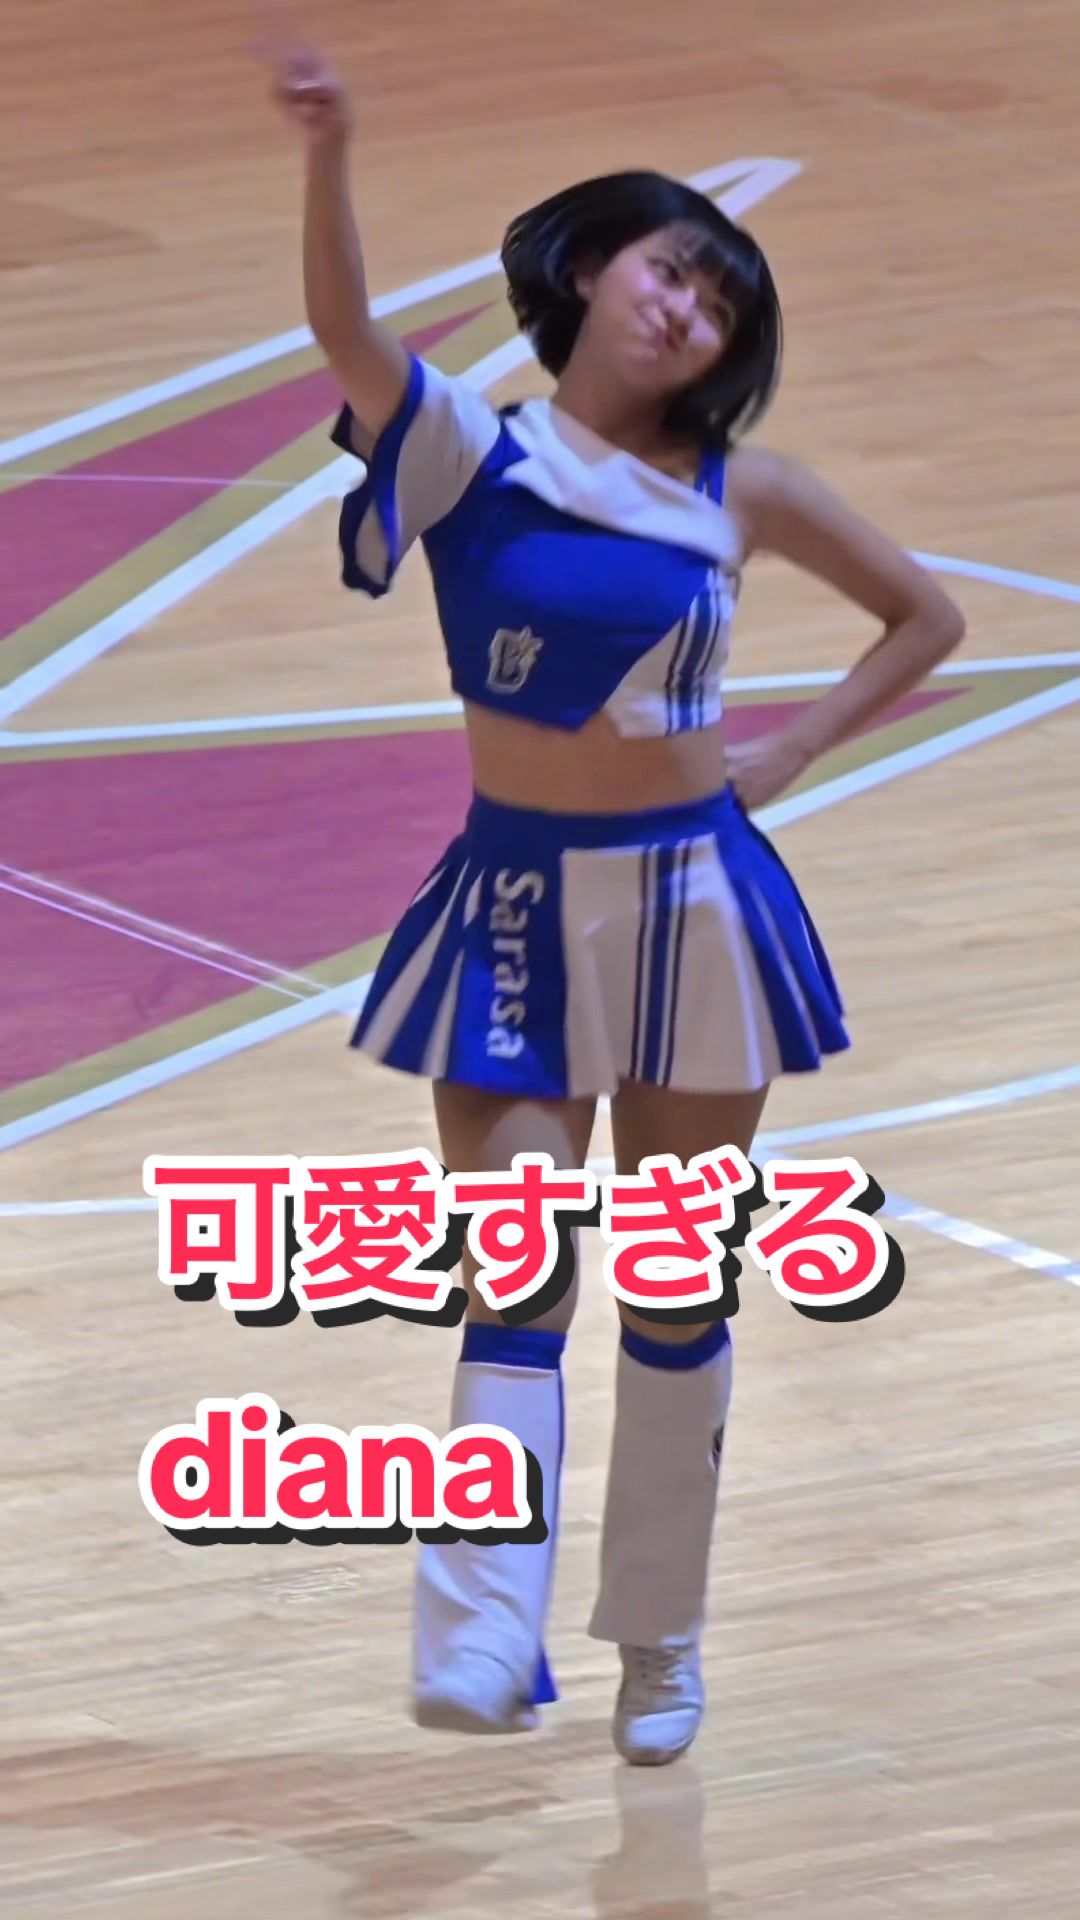 【激カワチアリーダーのジャンプジャンプダンス！】可愛すぎるdiana #kawaii #ブレイブtv #bravetv #cheerleader #japanesegirl # #sarasa 